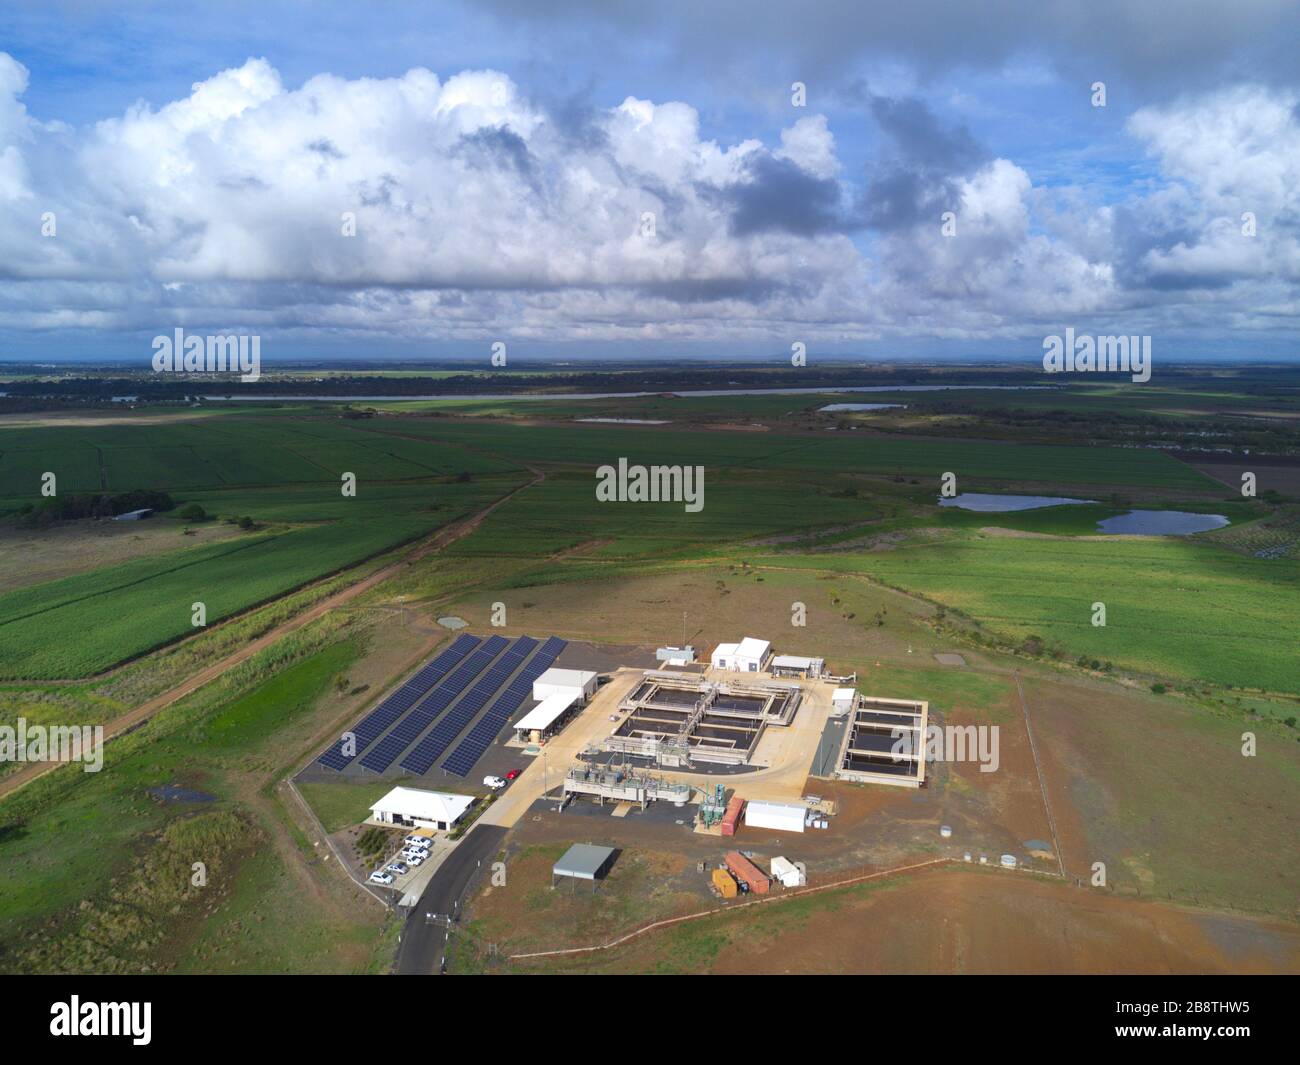 Aereo dell'impianto di trattamento Rubyanna Wastewater di Bundaberg Queensland Australia Foto Stock